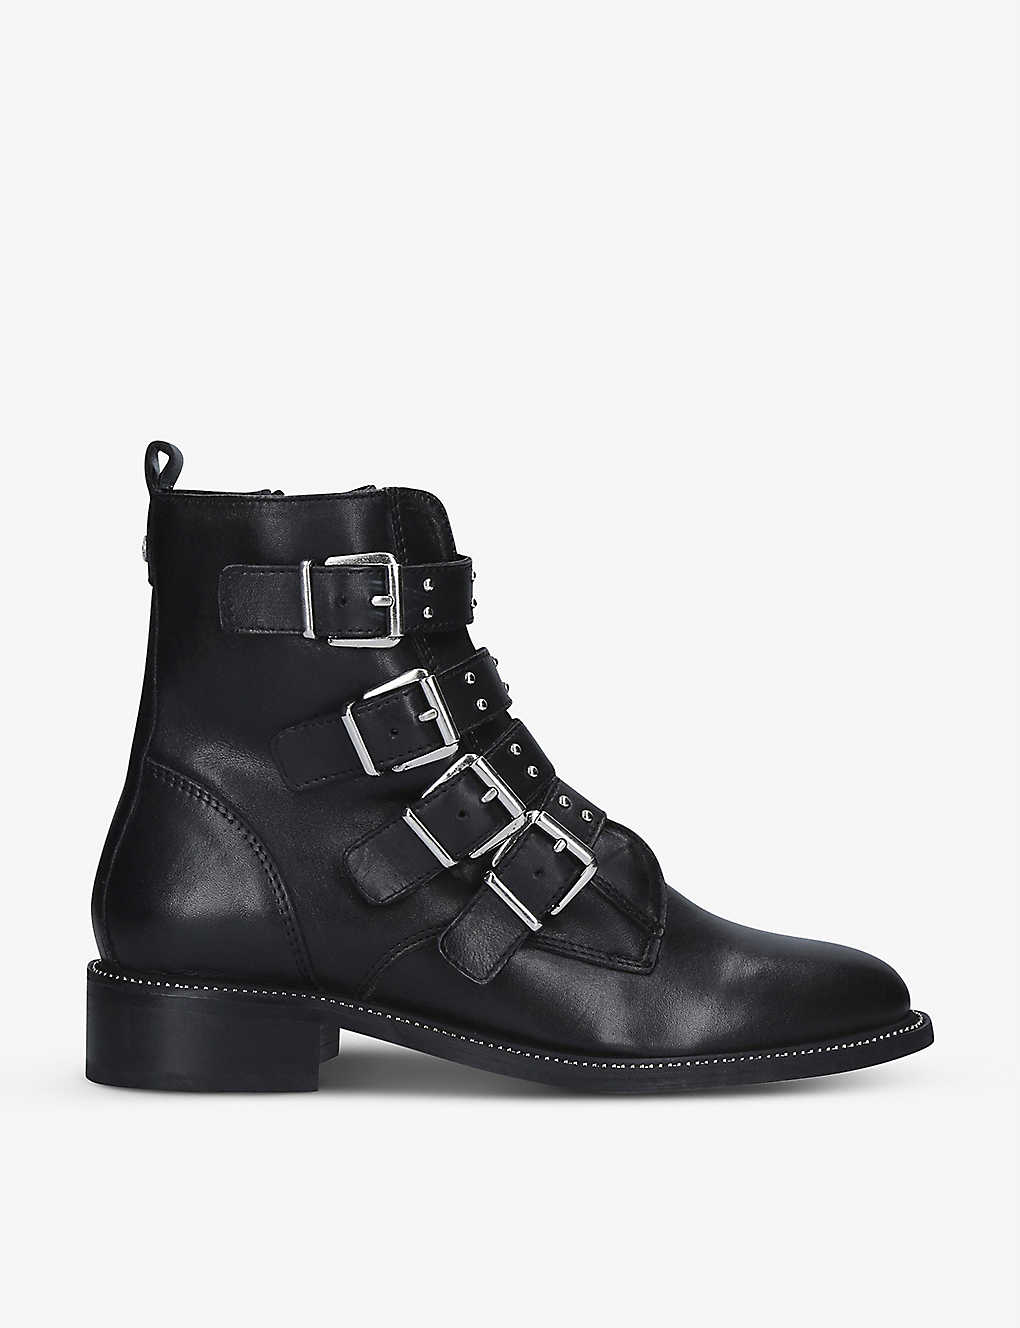 Strap leather ankle boots Selfridges & Co Women Shoes Boots Biker Boots 